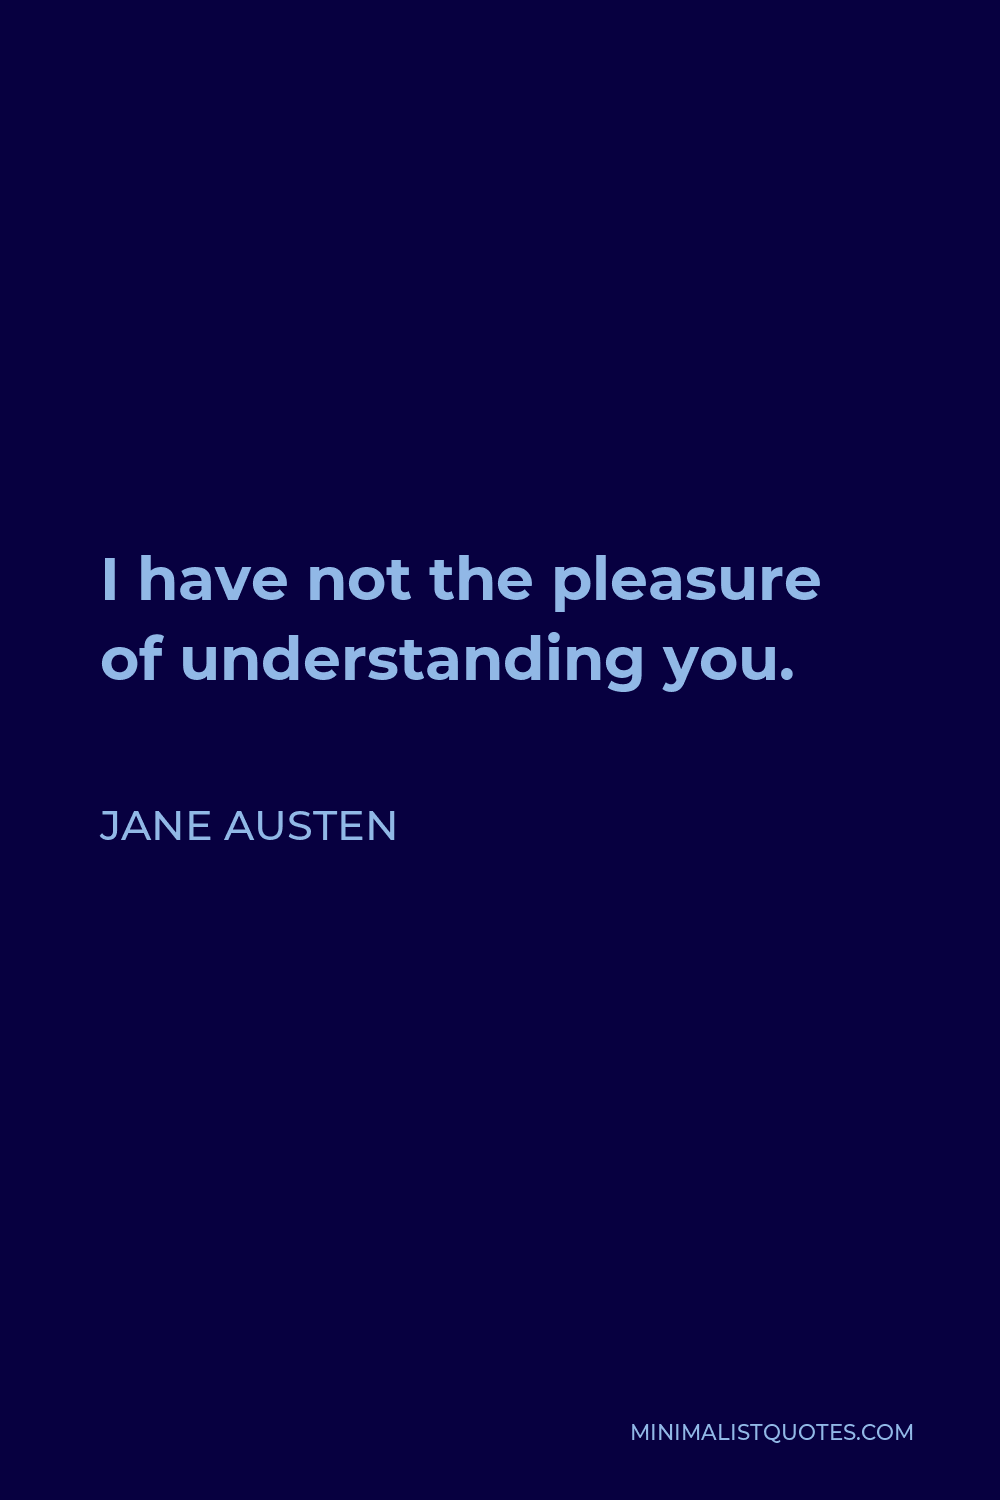 Jane Austen Quote - I have not the pleasure of understanding you.